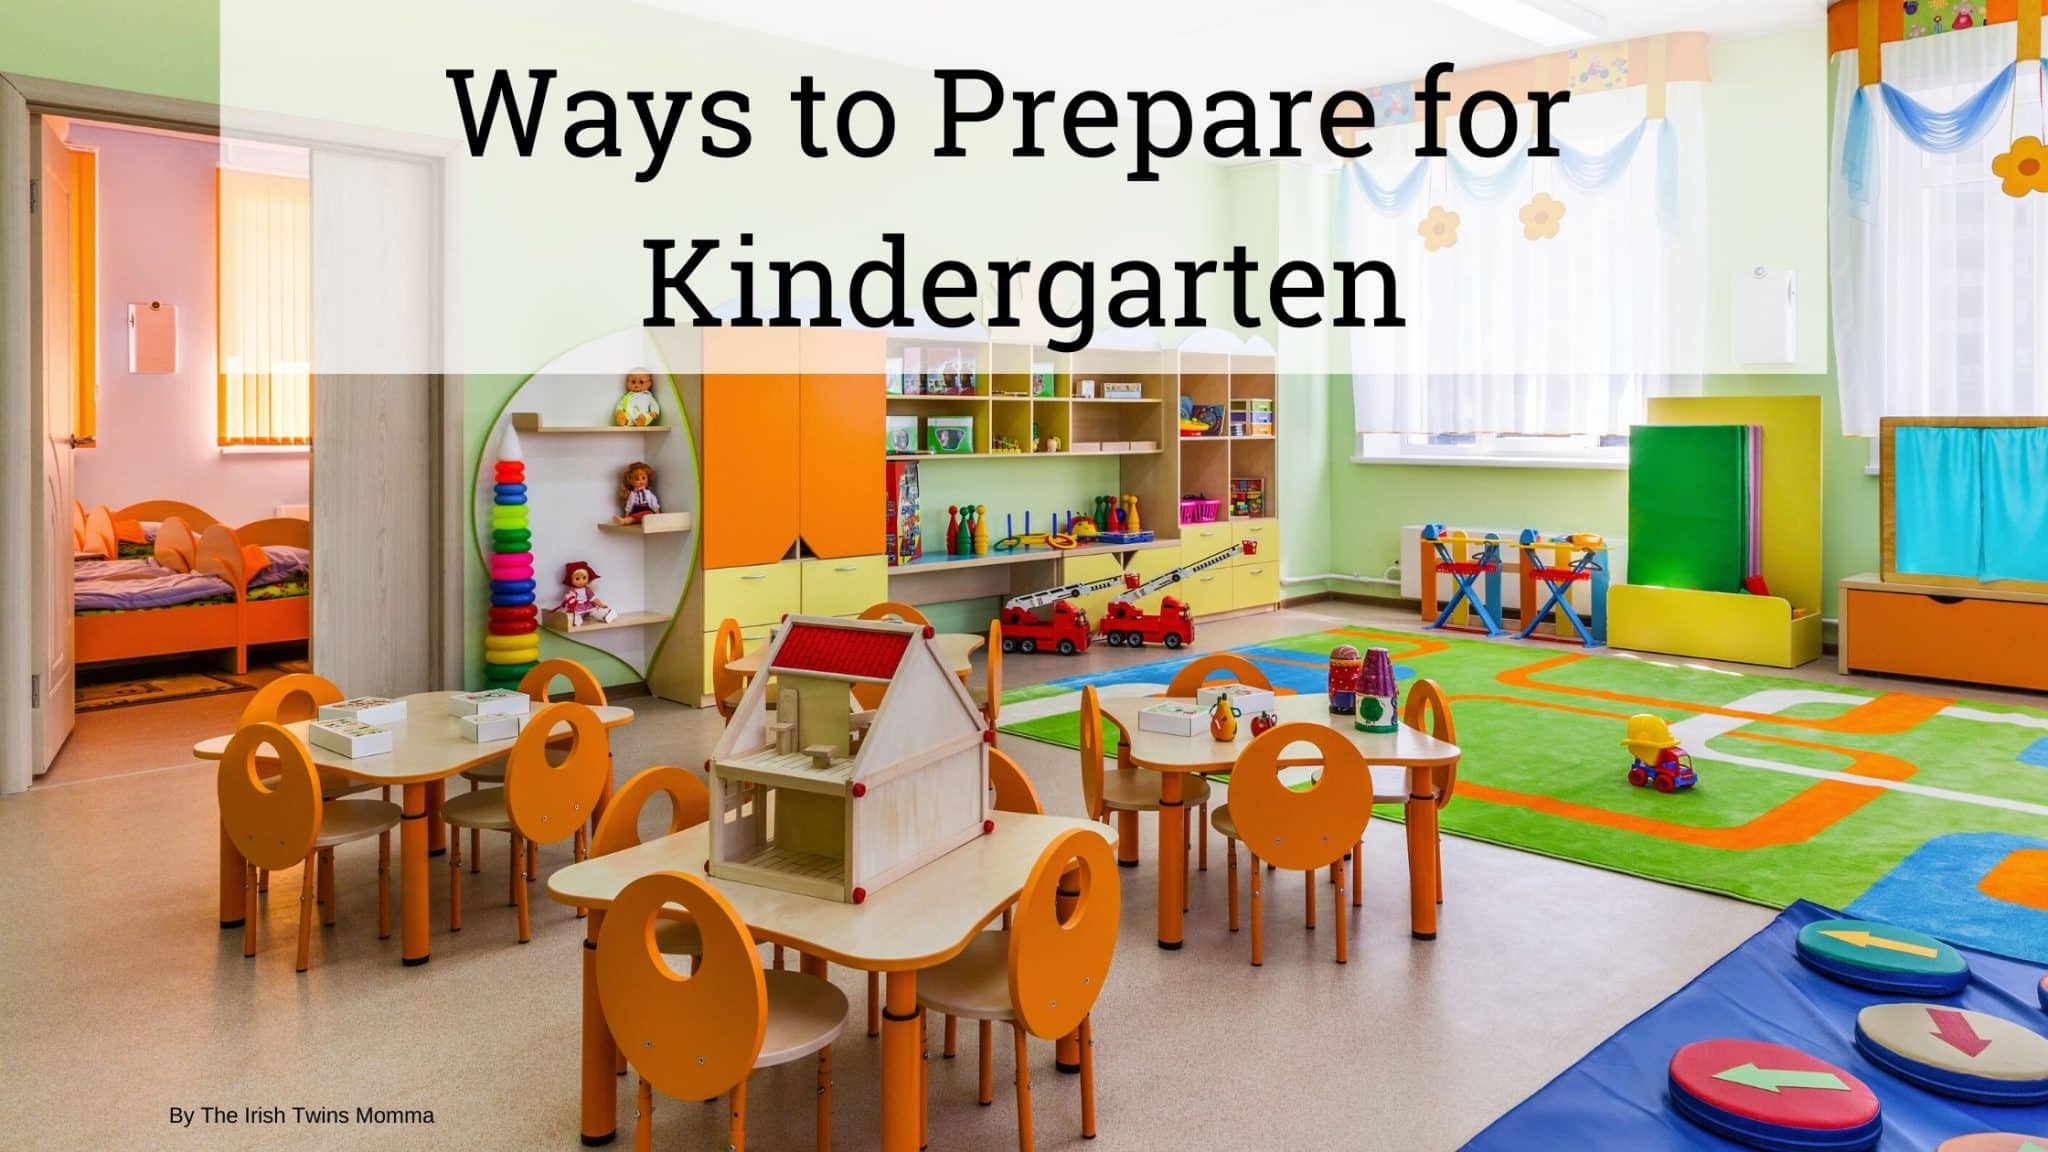 Ways to prepare for kindergarten